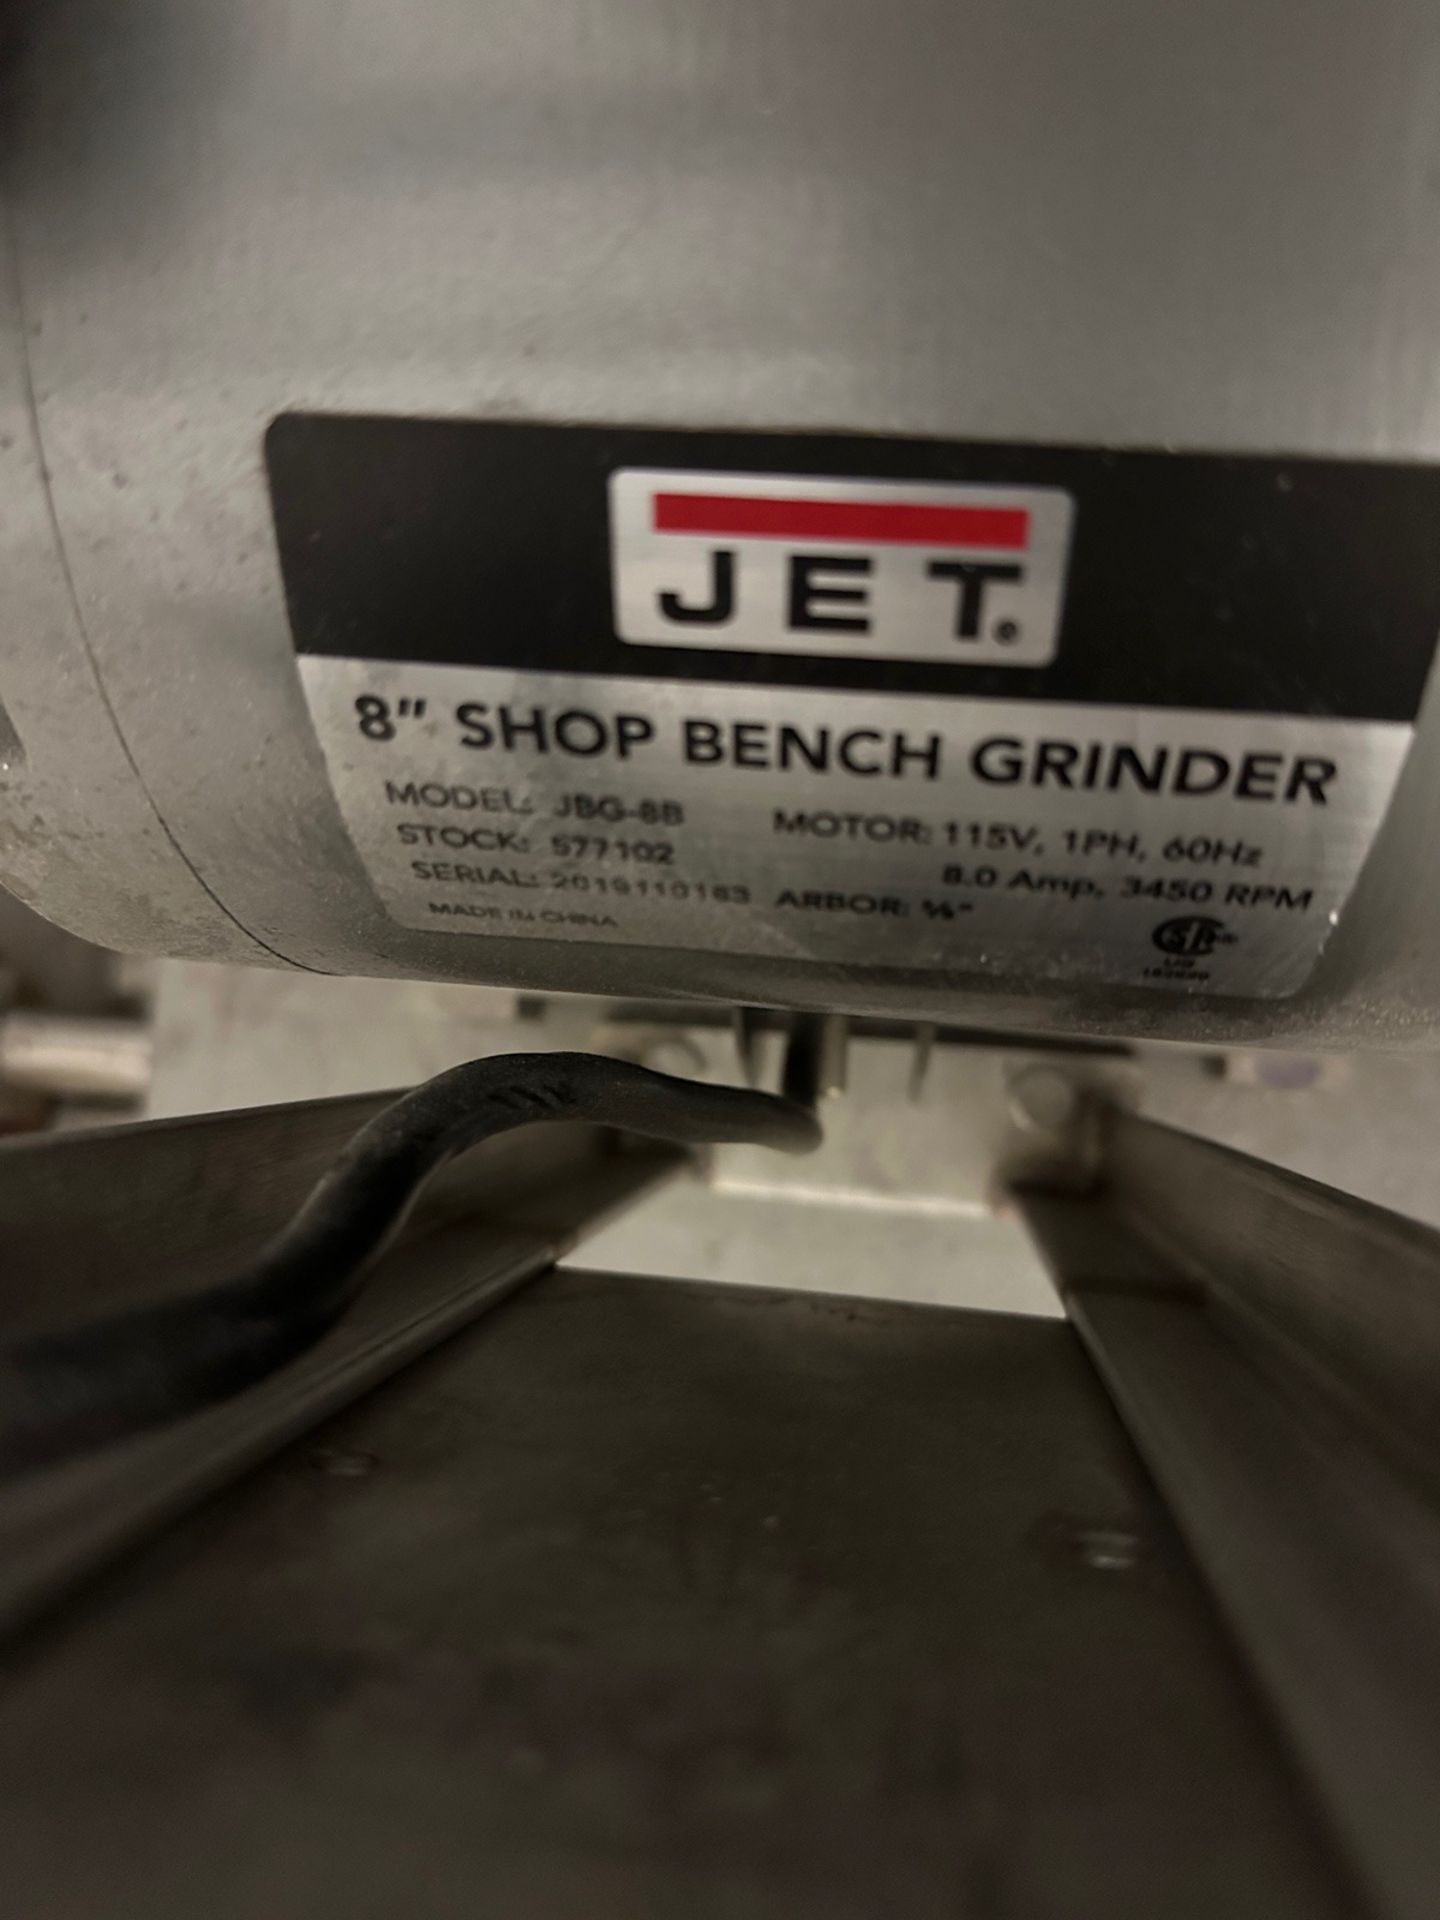 Jet 8" Shop Bench Grinder on Stainless Steel Frame | Rig Fee $50 - Image 3 of 3